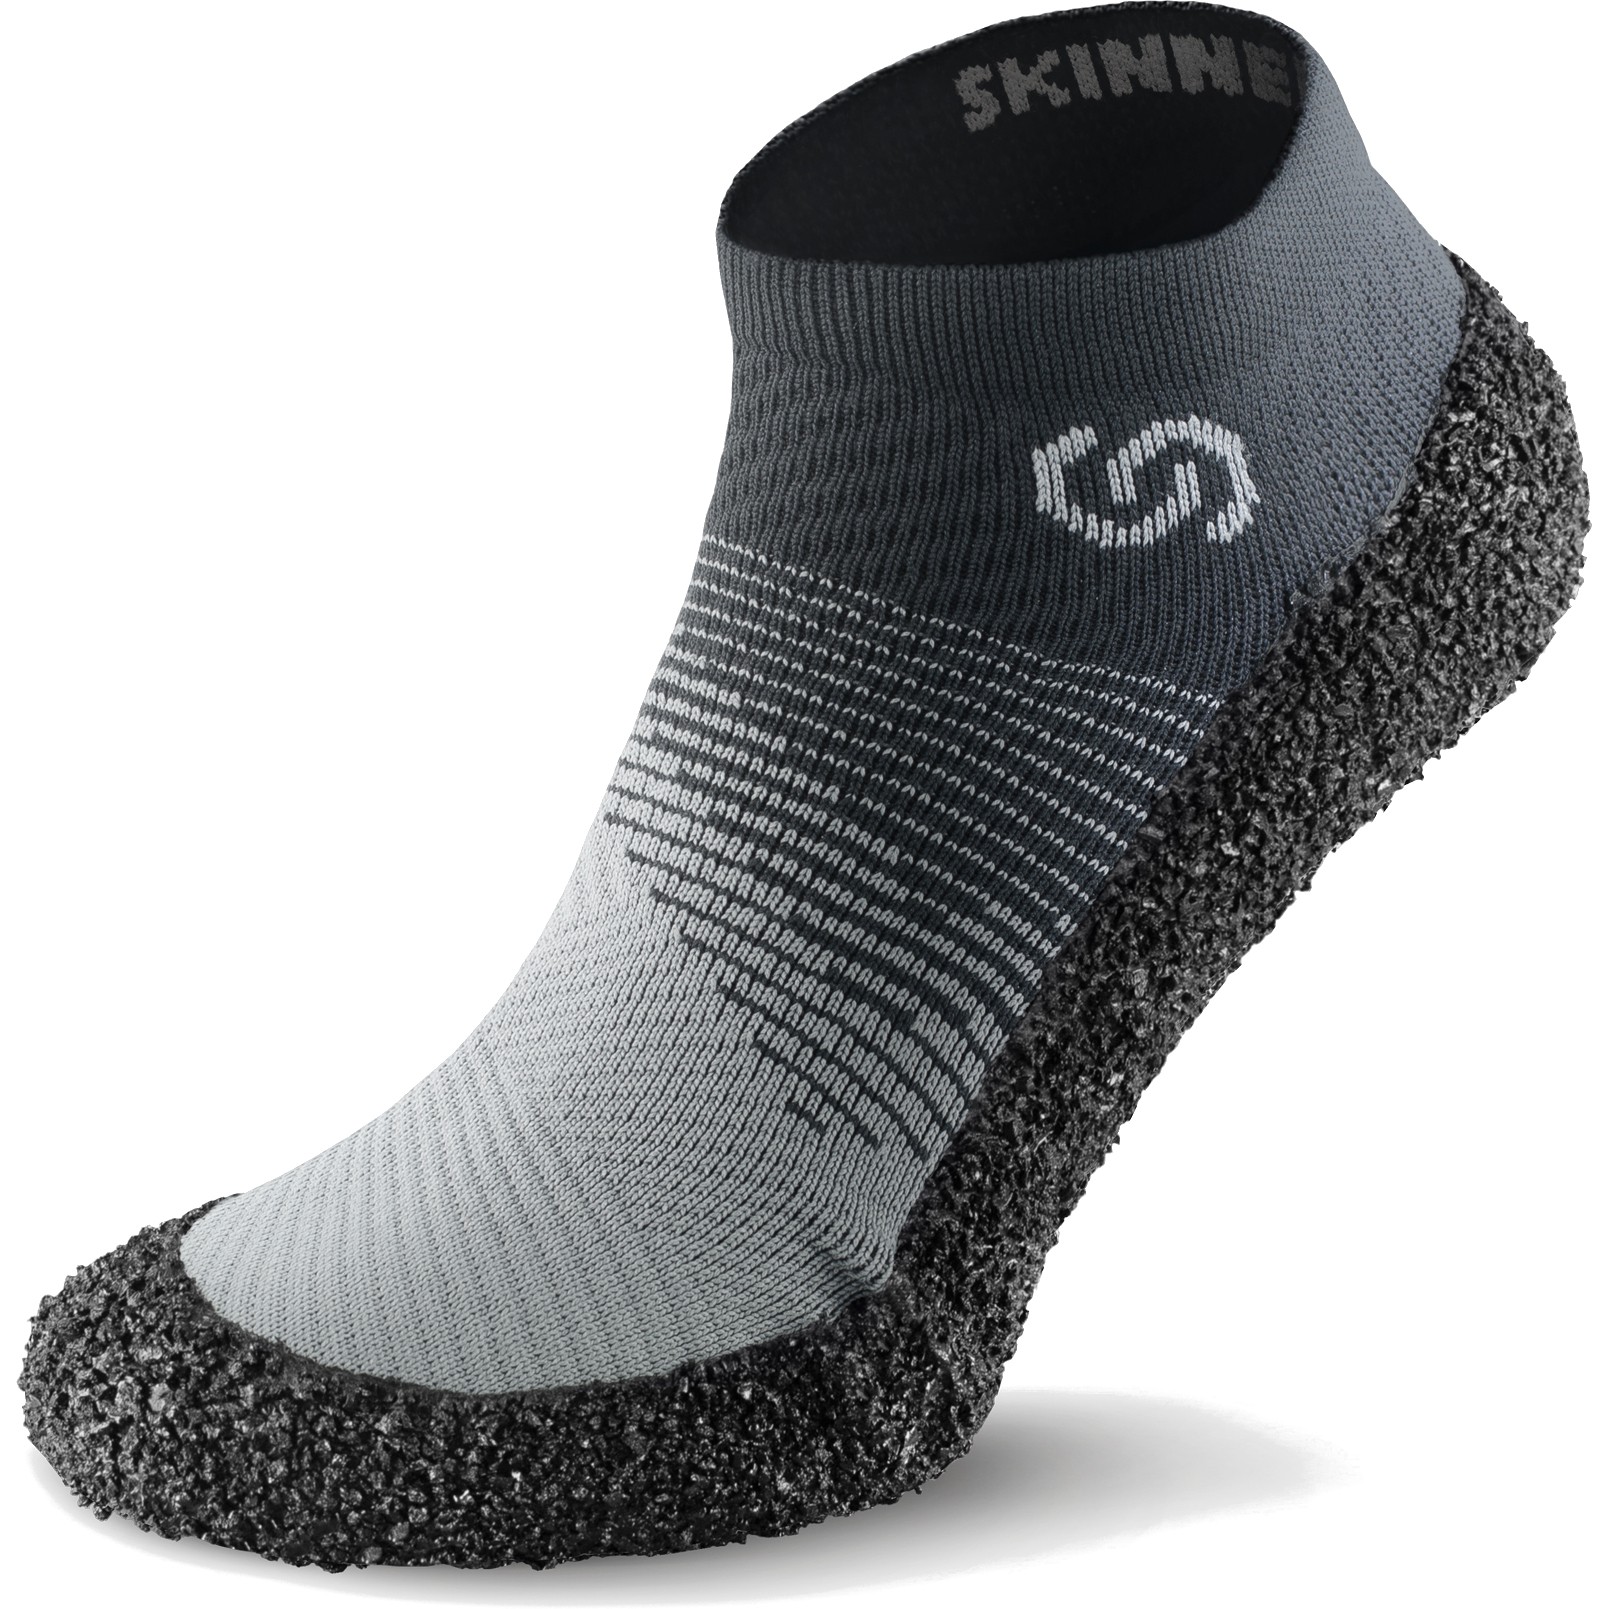 Productfoto van Skinners Sock Shoes 2.0 - stone